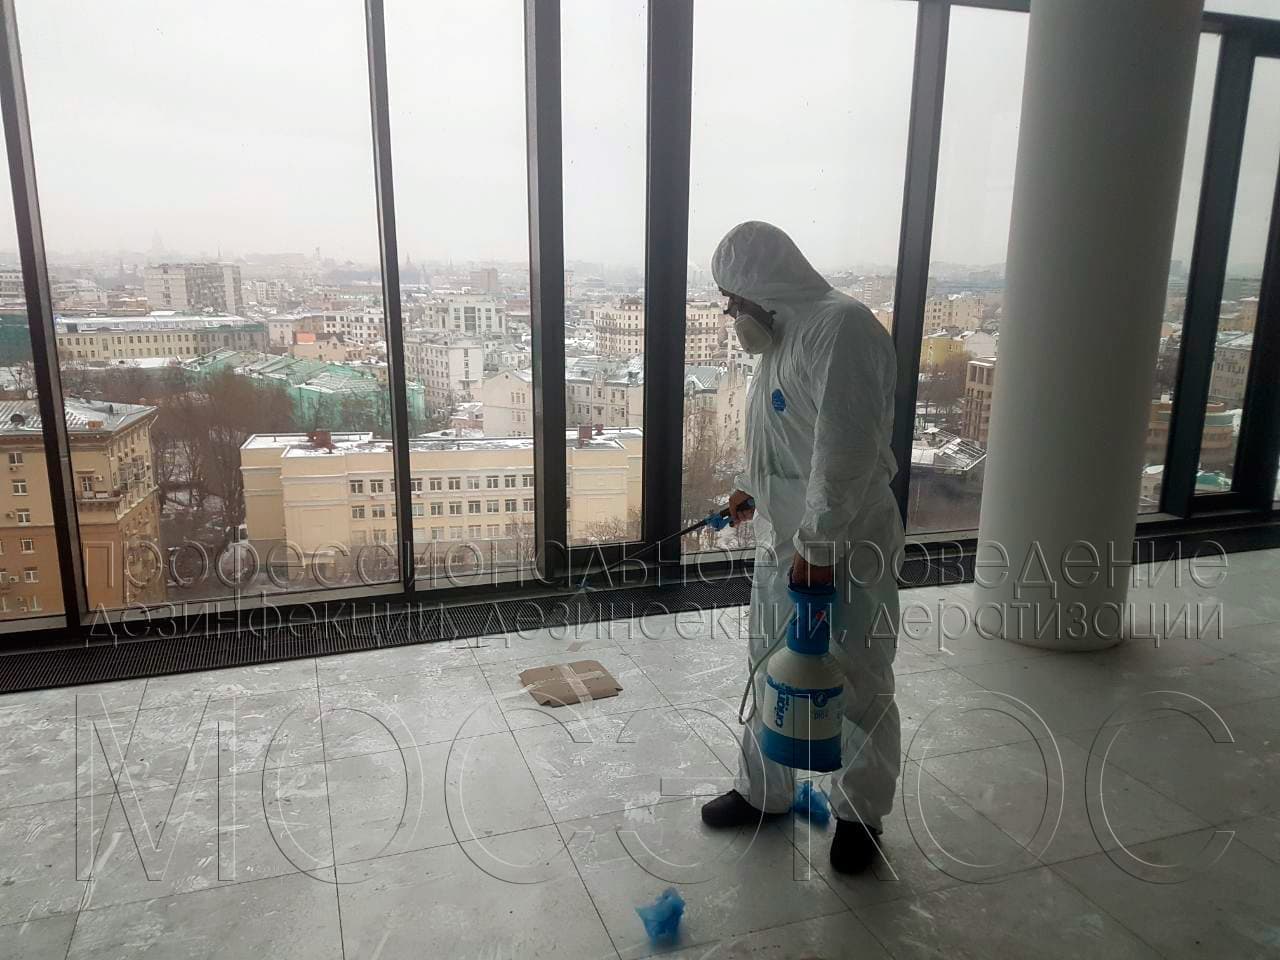 Обработка от тараканов в квартире в Подольске